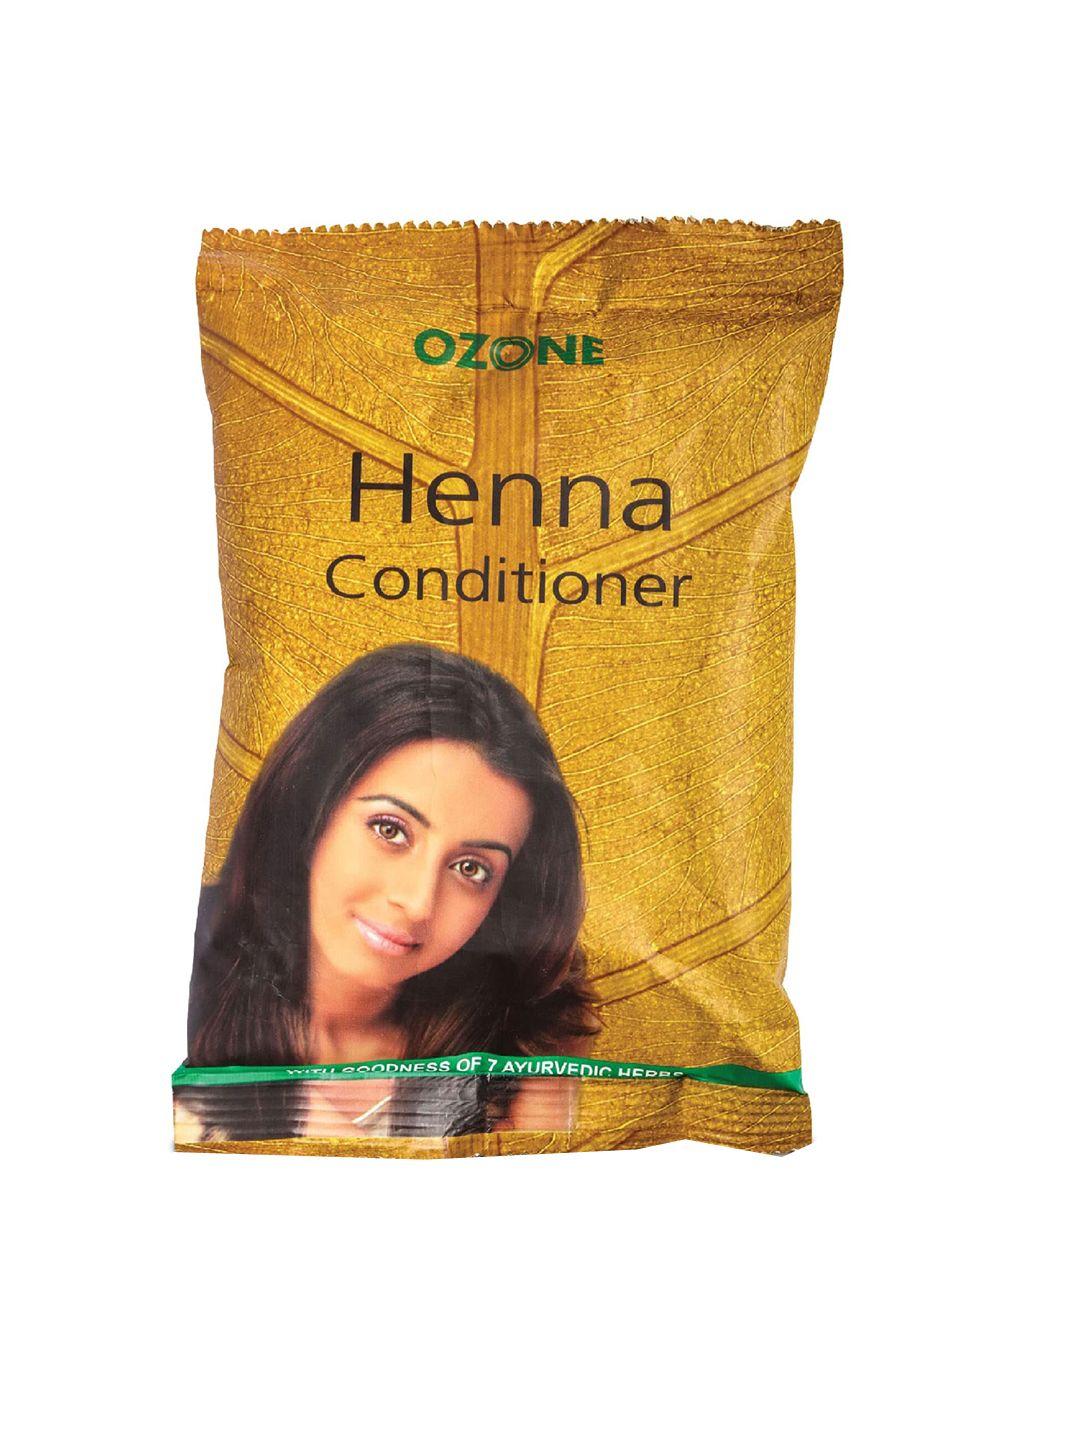 ozone 100% organic henna conditioner mehndi with 7 ayurvedic herbs - 100g